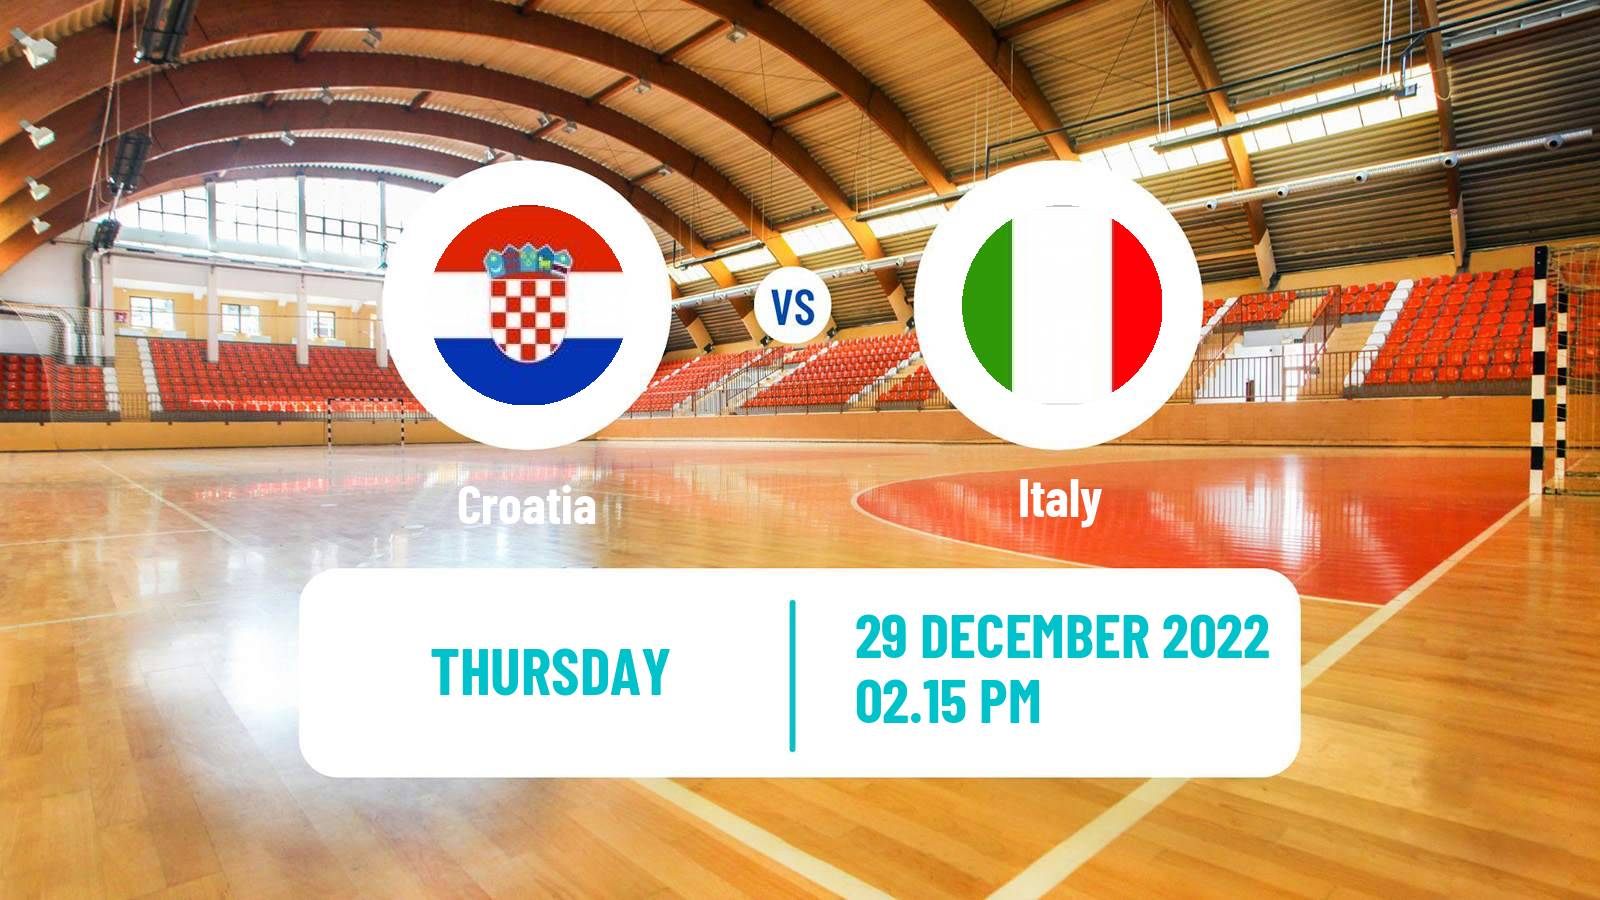 Handball Friendly International Handball Croatia - Italy